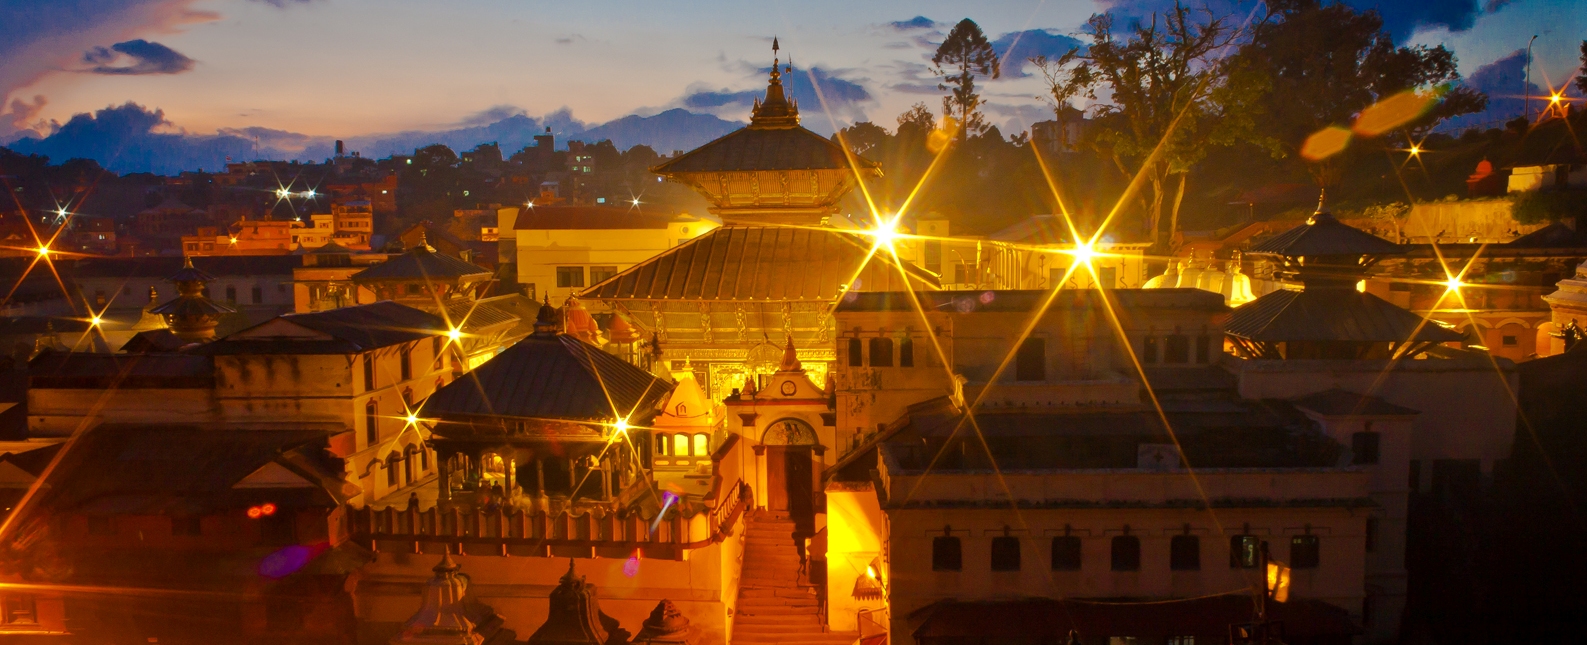 pashupatinath_temple_nepal